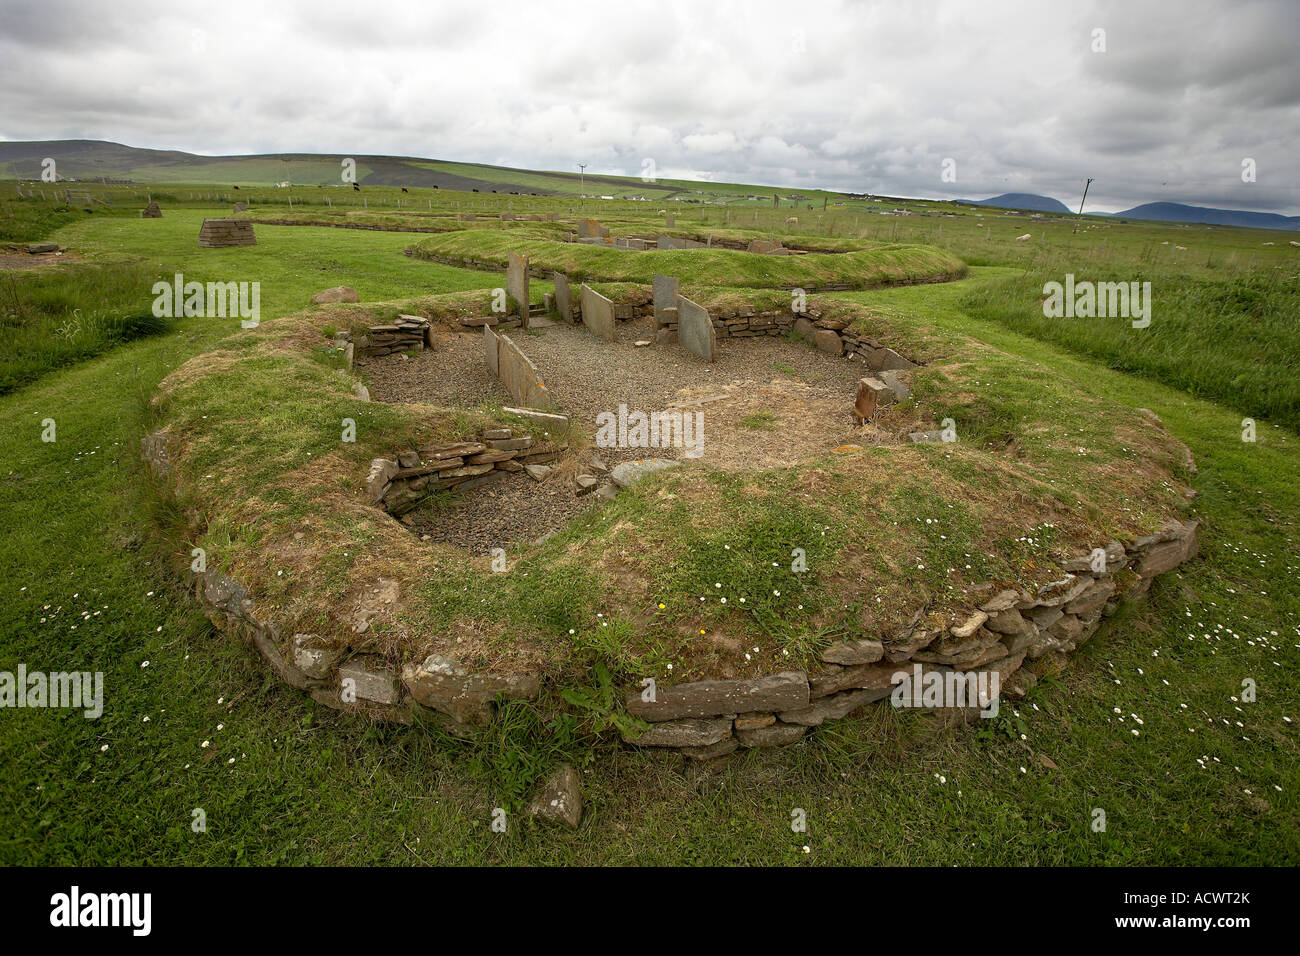 Eines der kleinen Häuser im Dorf Barnhouse neolithische Siedlung am Ufer des Loch Harray Orkneyinseln Schottland Stockfoto